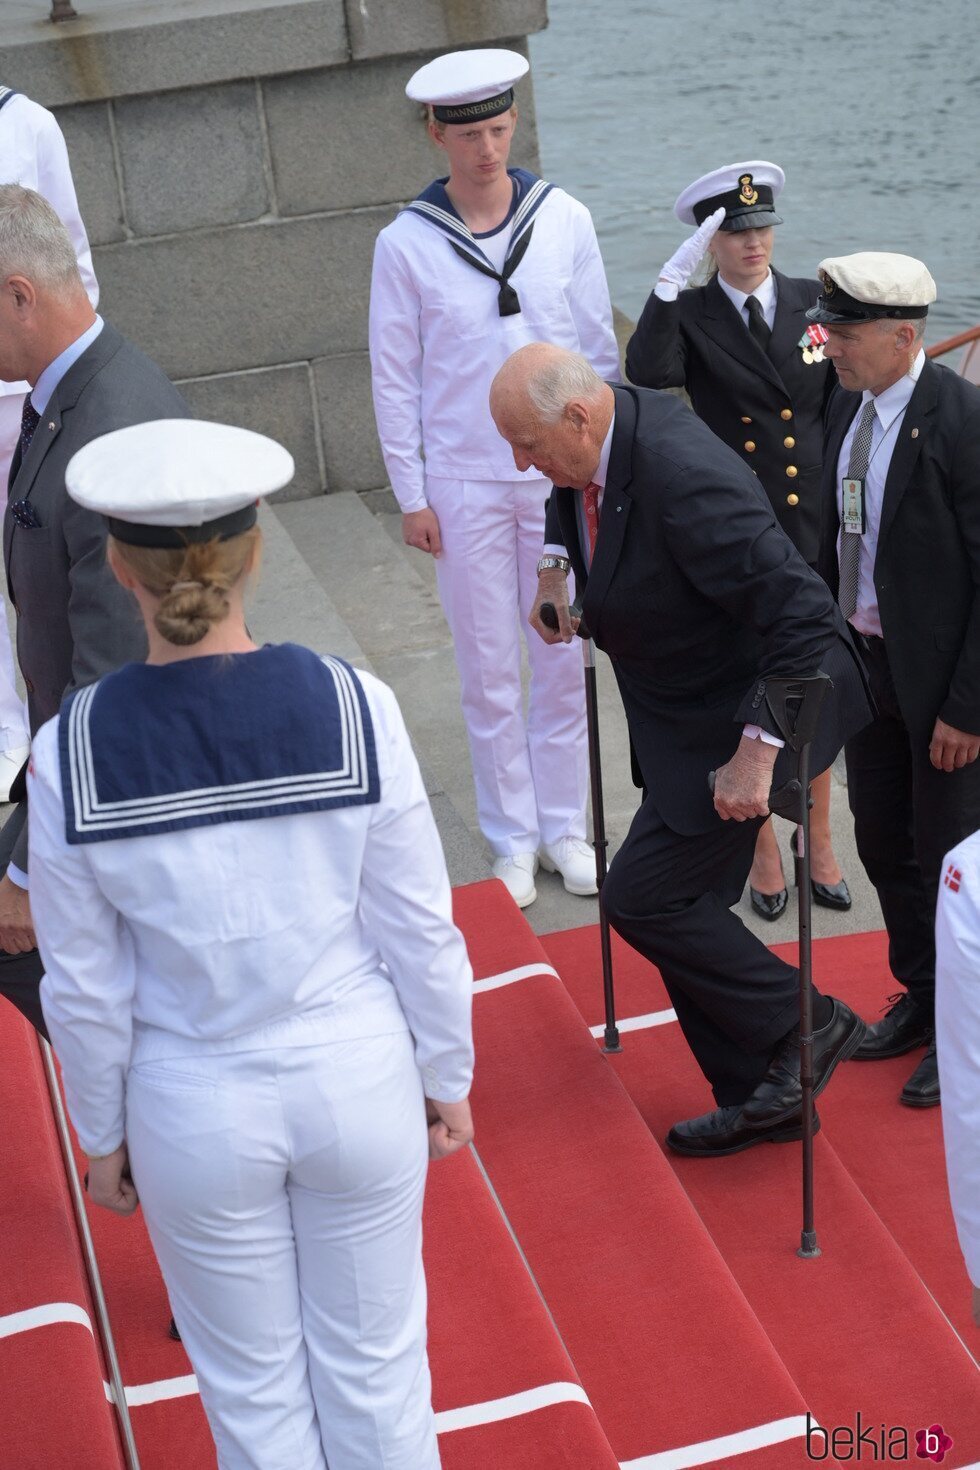 Harald de Noruega subiendo las escaleras con muletas en su visita oficial a Dinamarca